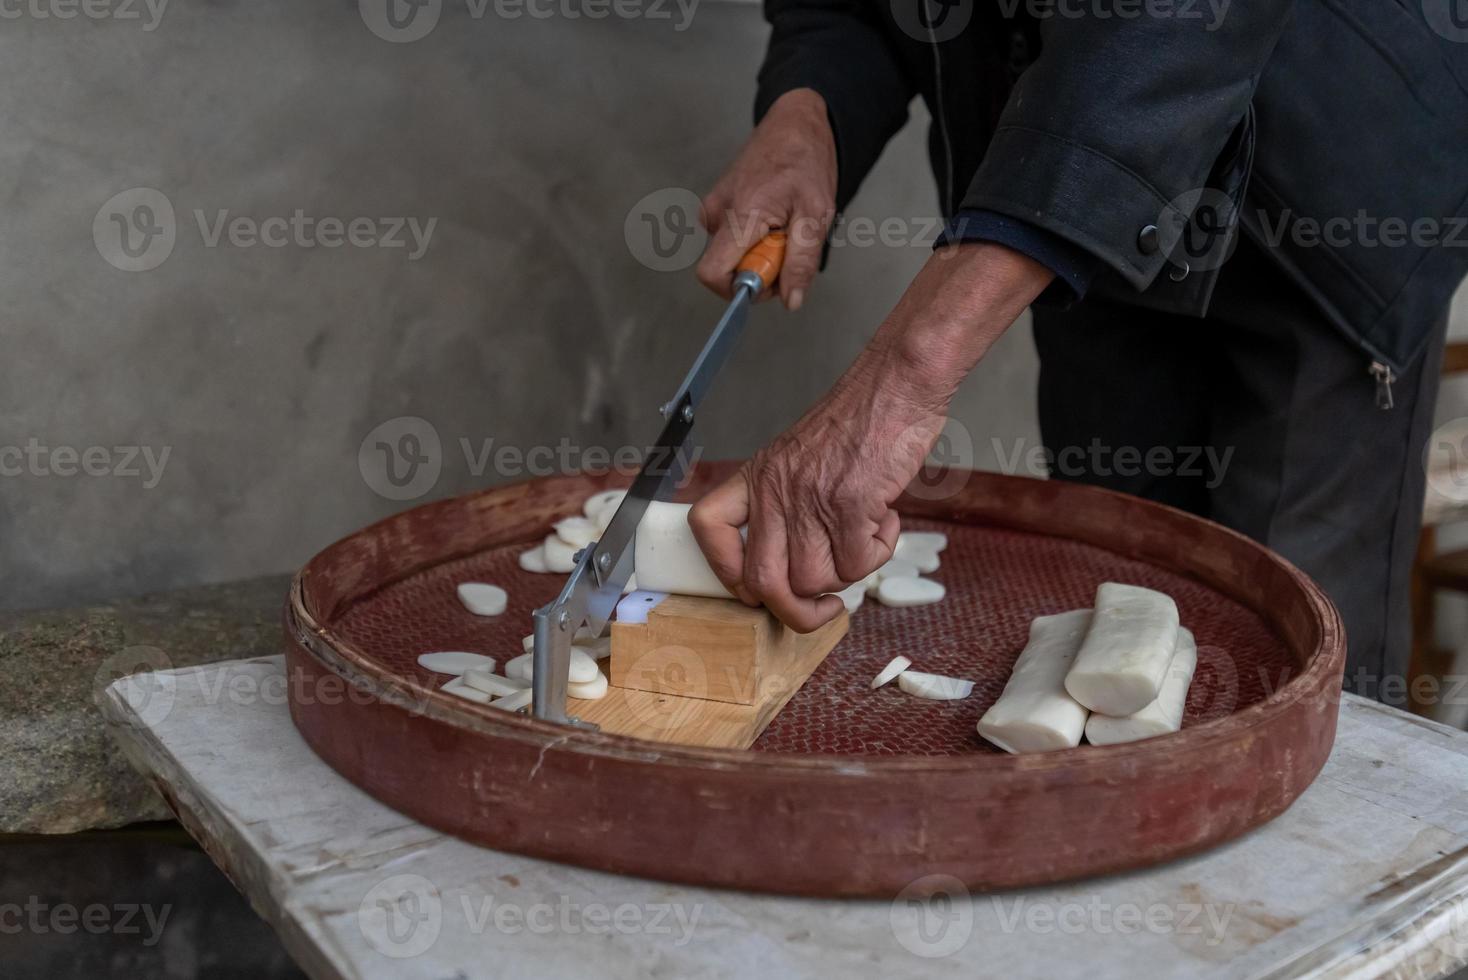 het productieproces van traditionele chinese snacks, rijstreepjes, is een delicatesse gemaakt van rijst foto